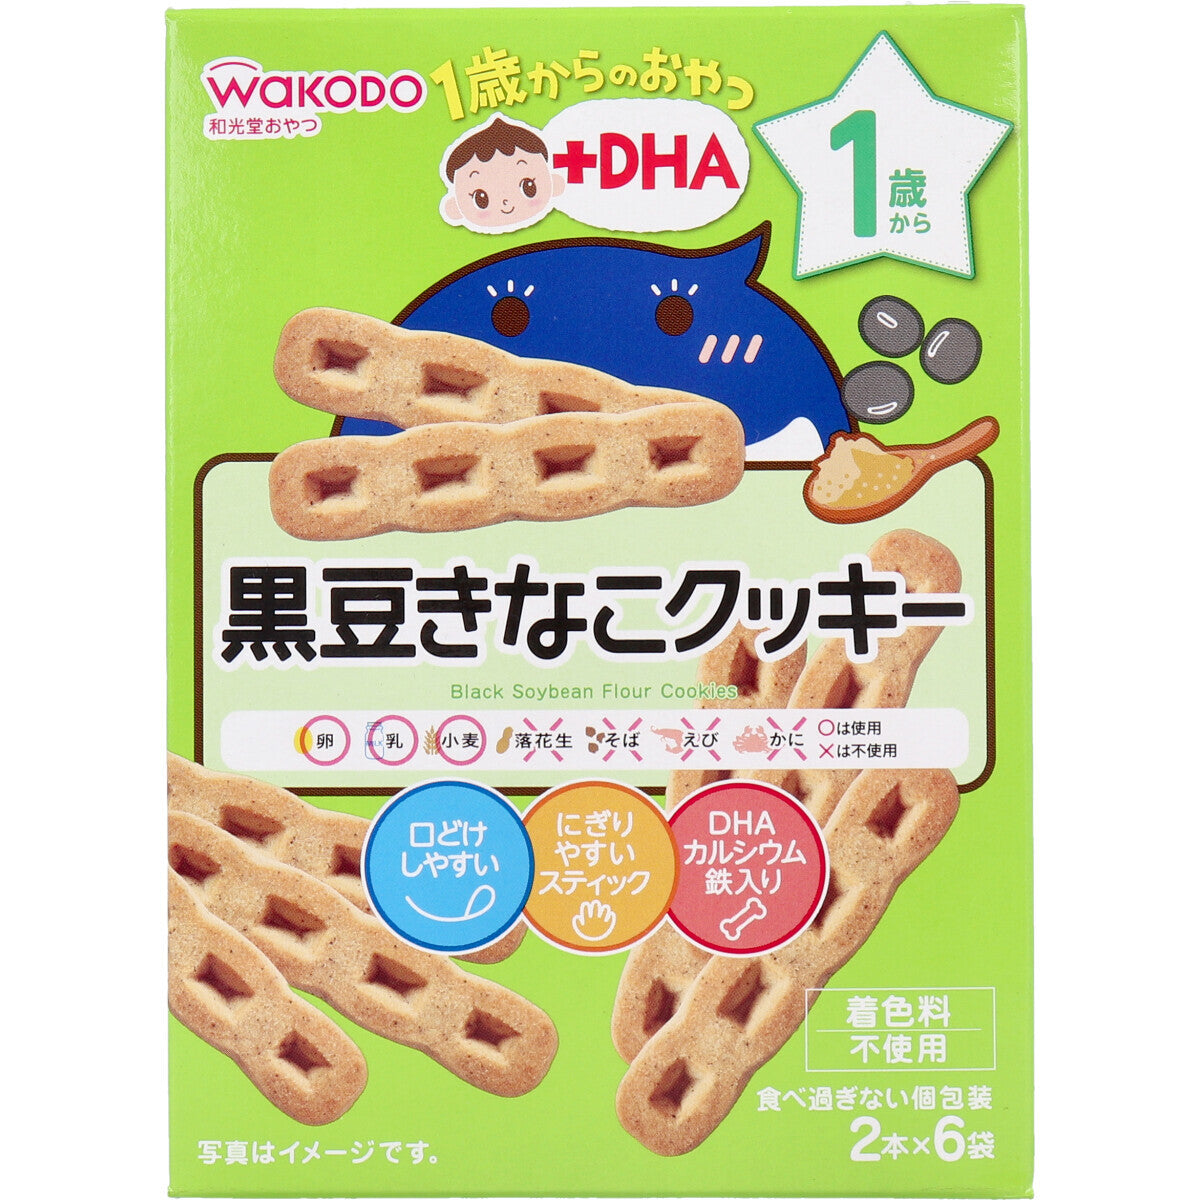 Wakodo - Baby Snacks + DHA Black Bean Soybean Cookies 2 x 6 bags